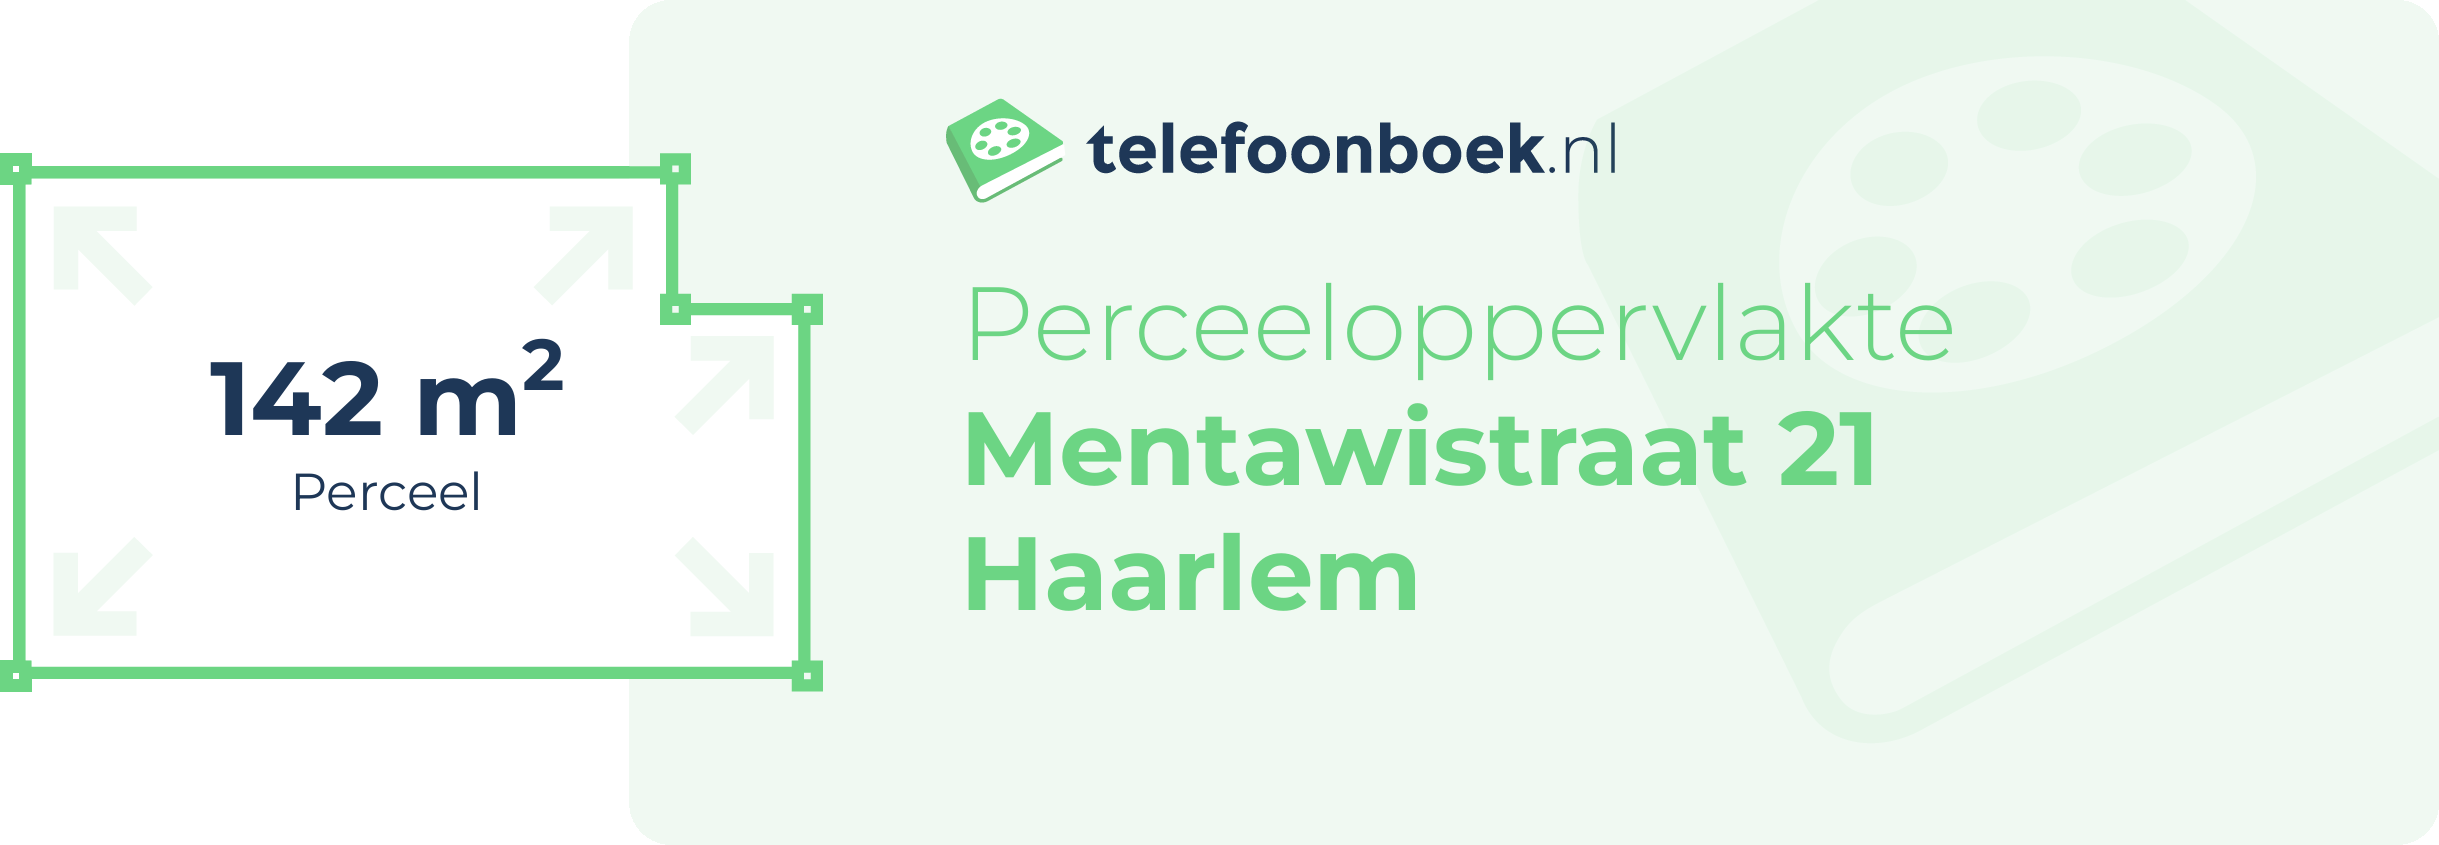 Perceeloppervlakte Mentawistraat 21 Haarlem